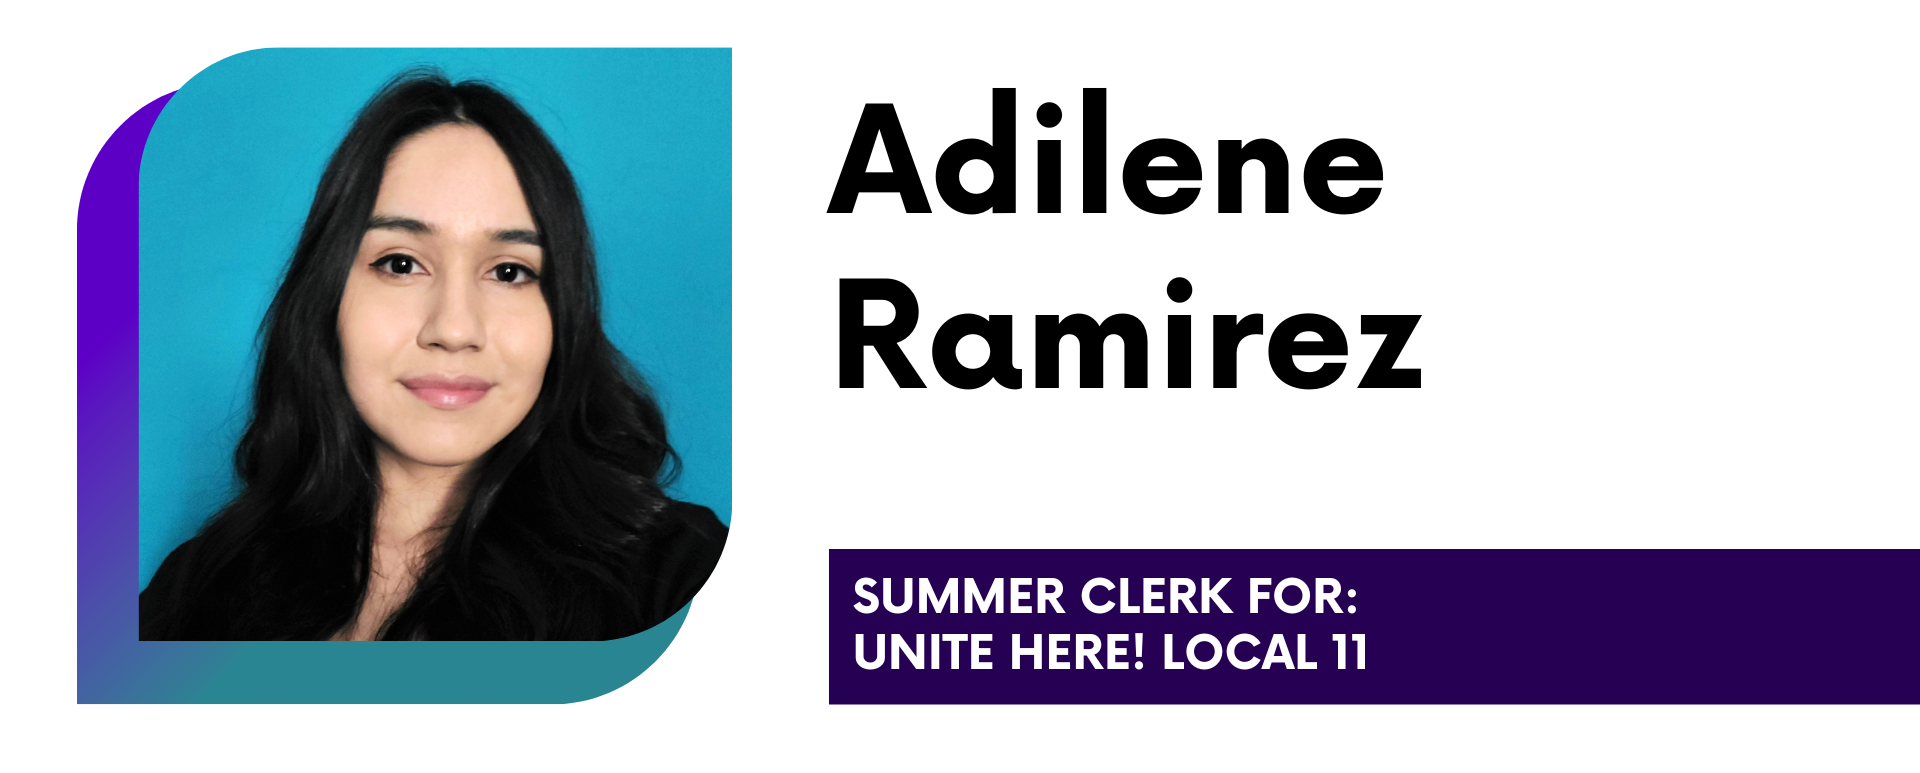 Adilene Ramirez Summer Clerk for Unite Here! Local 11